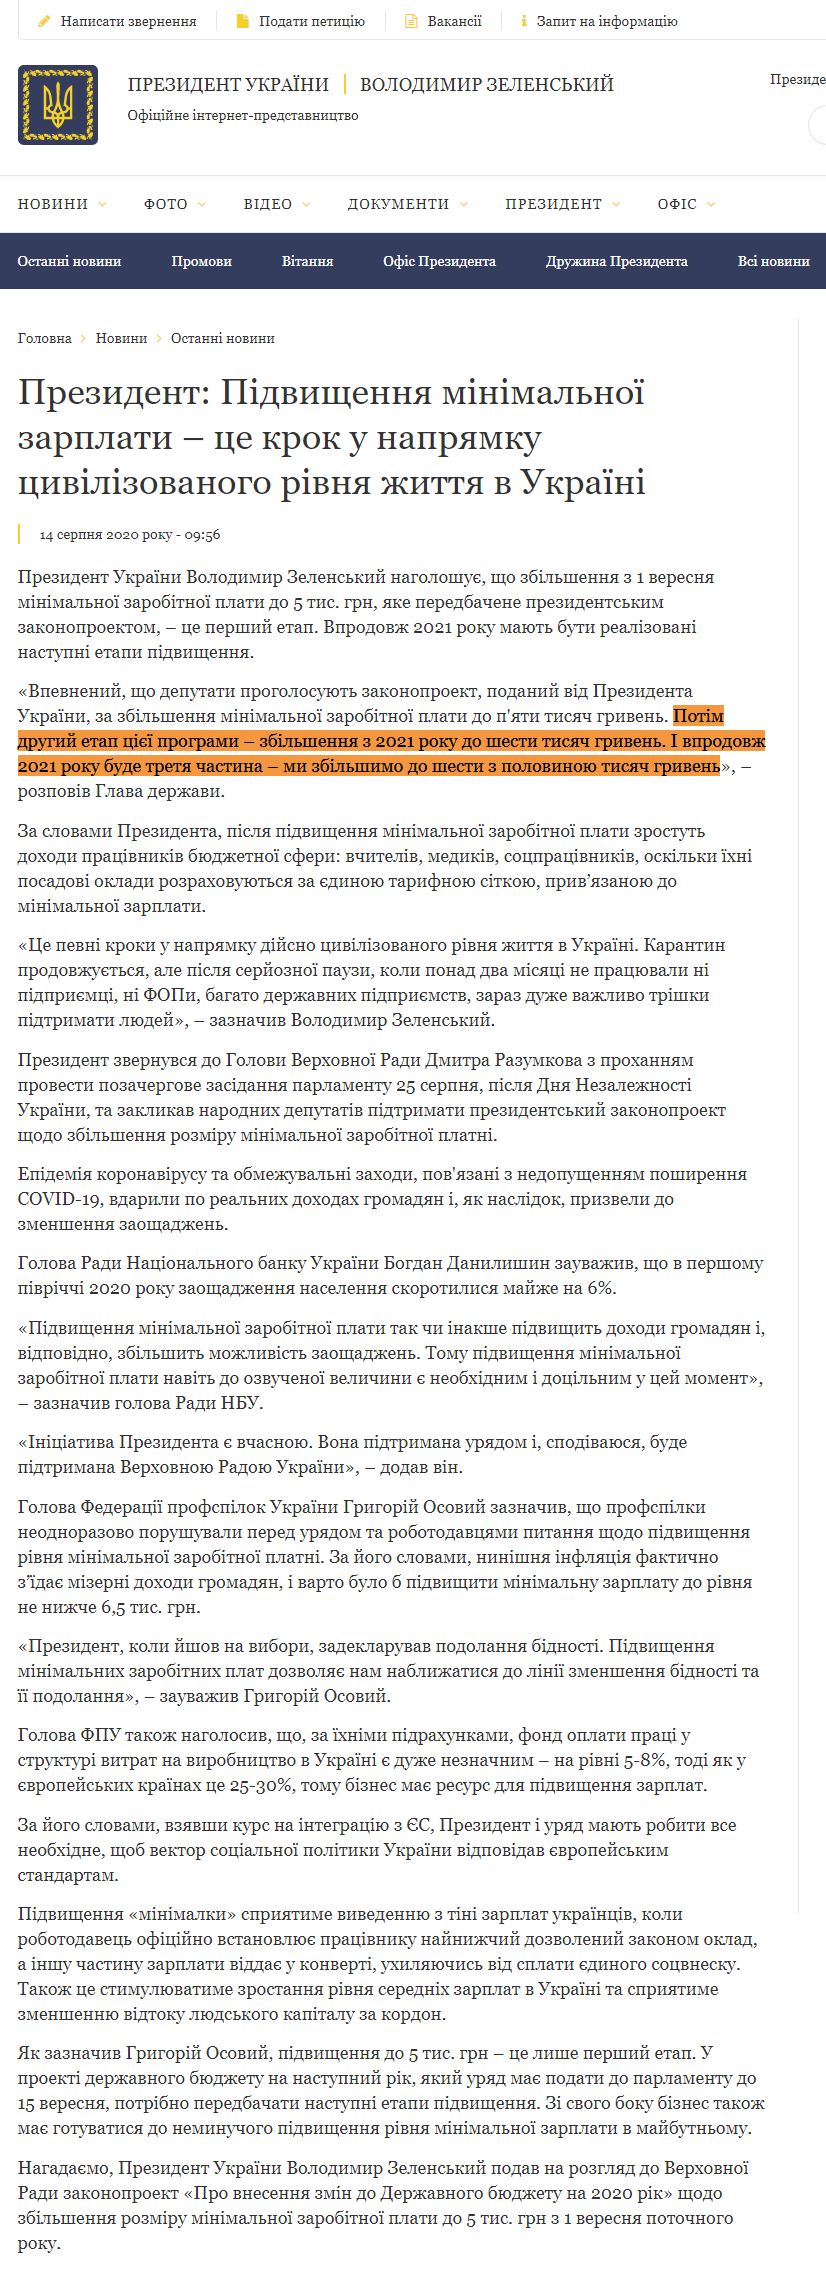 https://www.president.gov.ua/news/prezident-pidvishennya-minimalnoyi-zarplati-ce-krok-u-naprya-62721